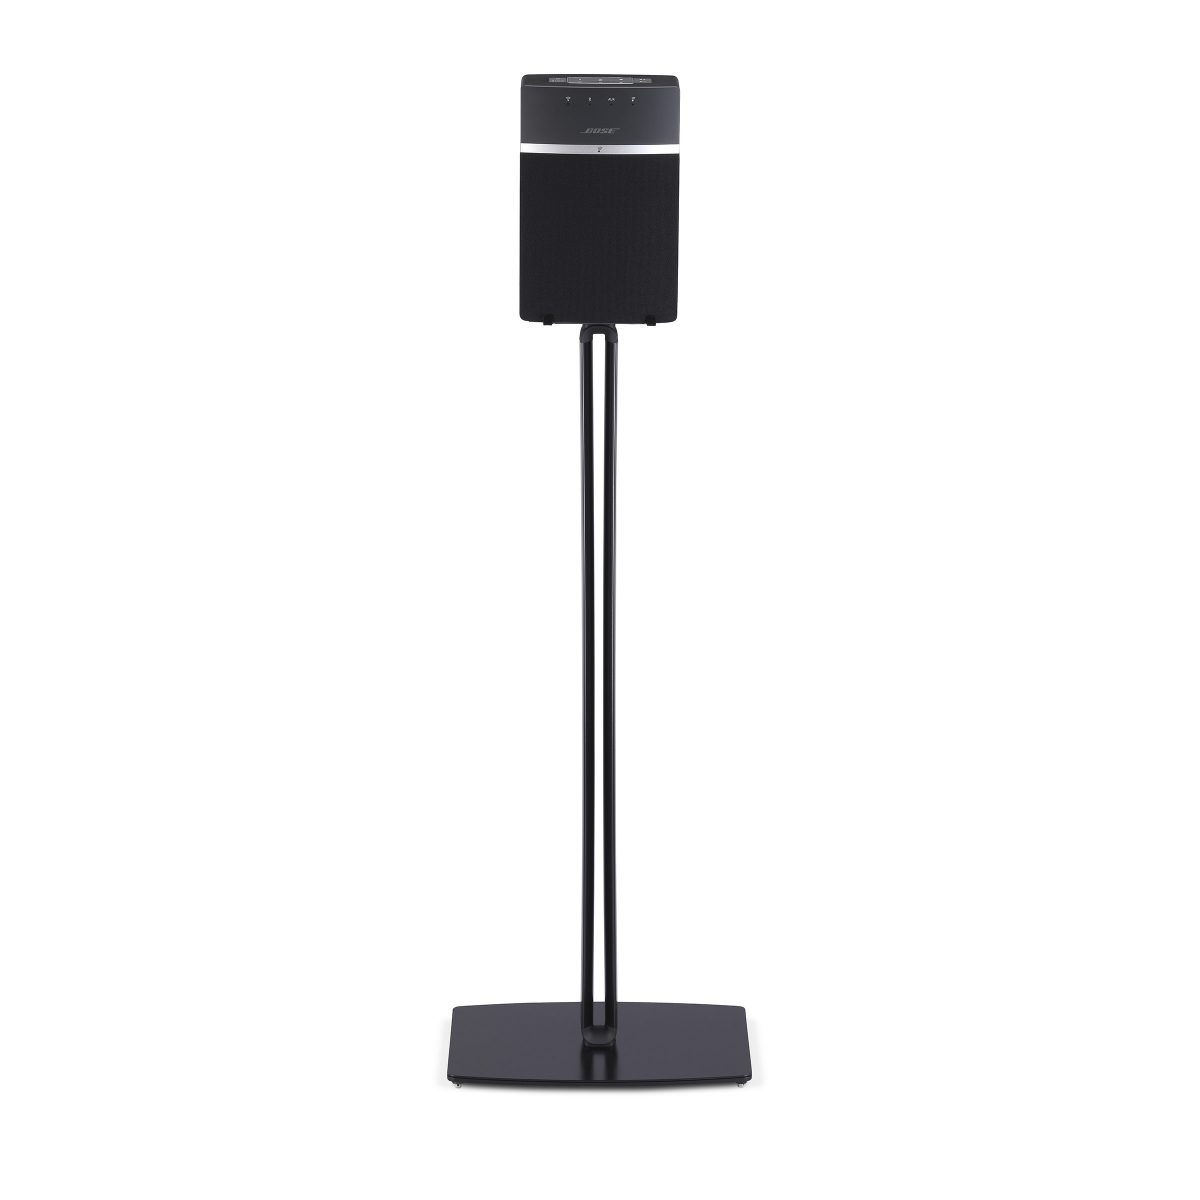 Bose SoundTouch 10 standaard zwart 8